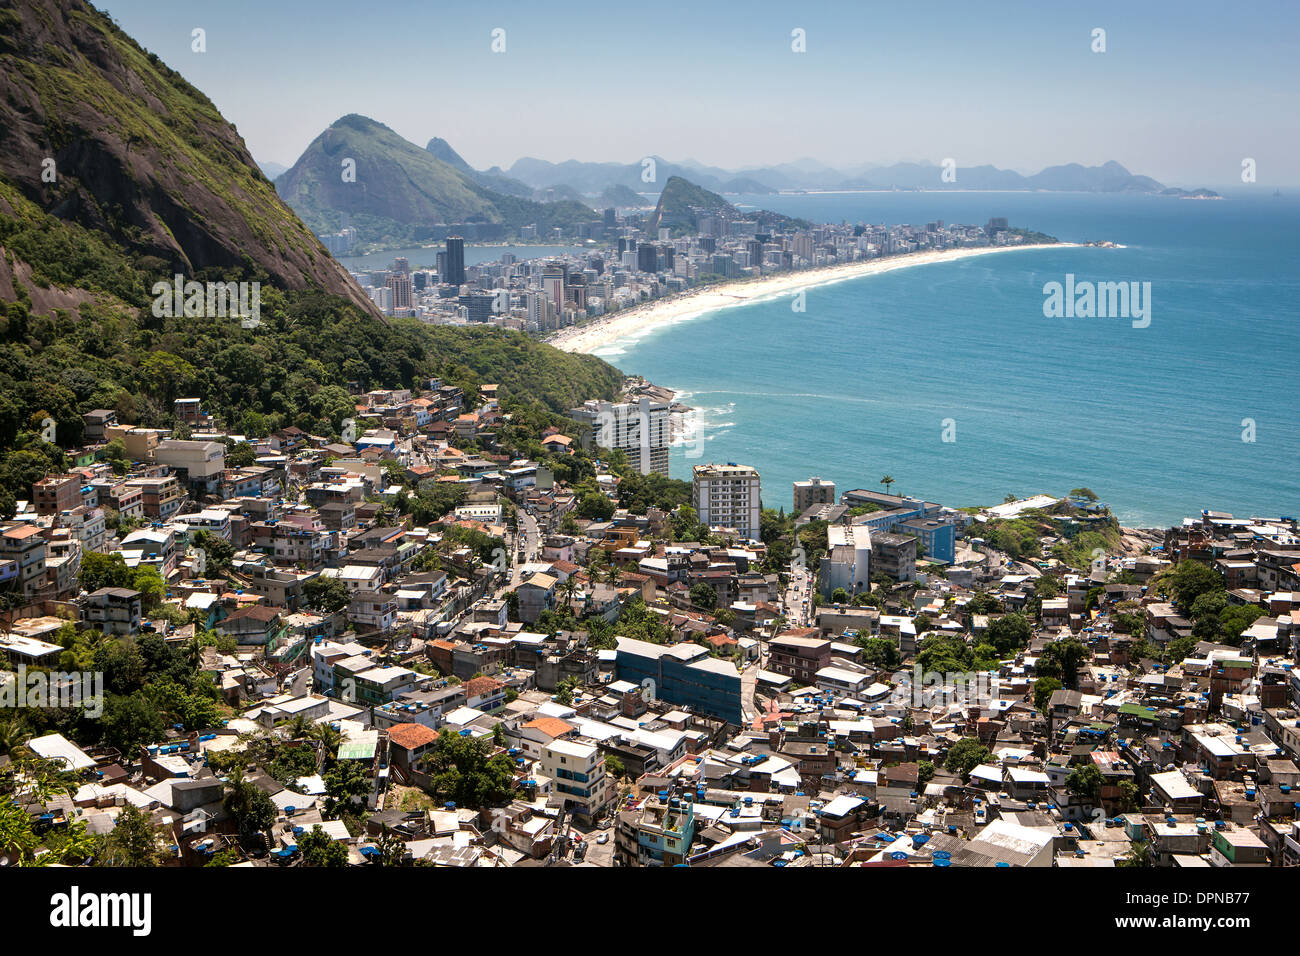 Vidigal slum, voir d'Ipanema, la plage d'Ipanema de Vidigal, Rio de Janeiro, Brésil Banque D'Images